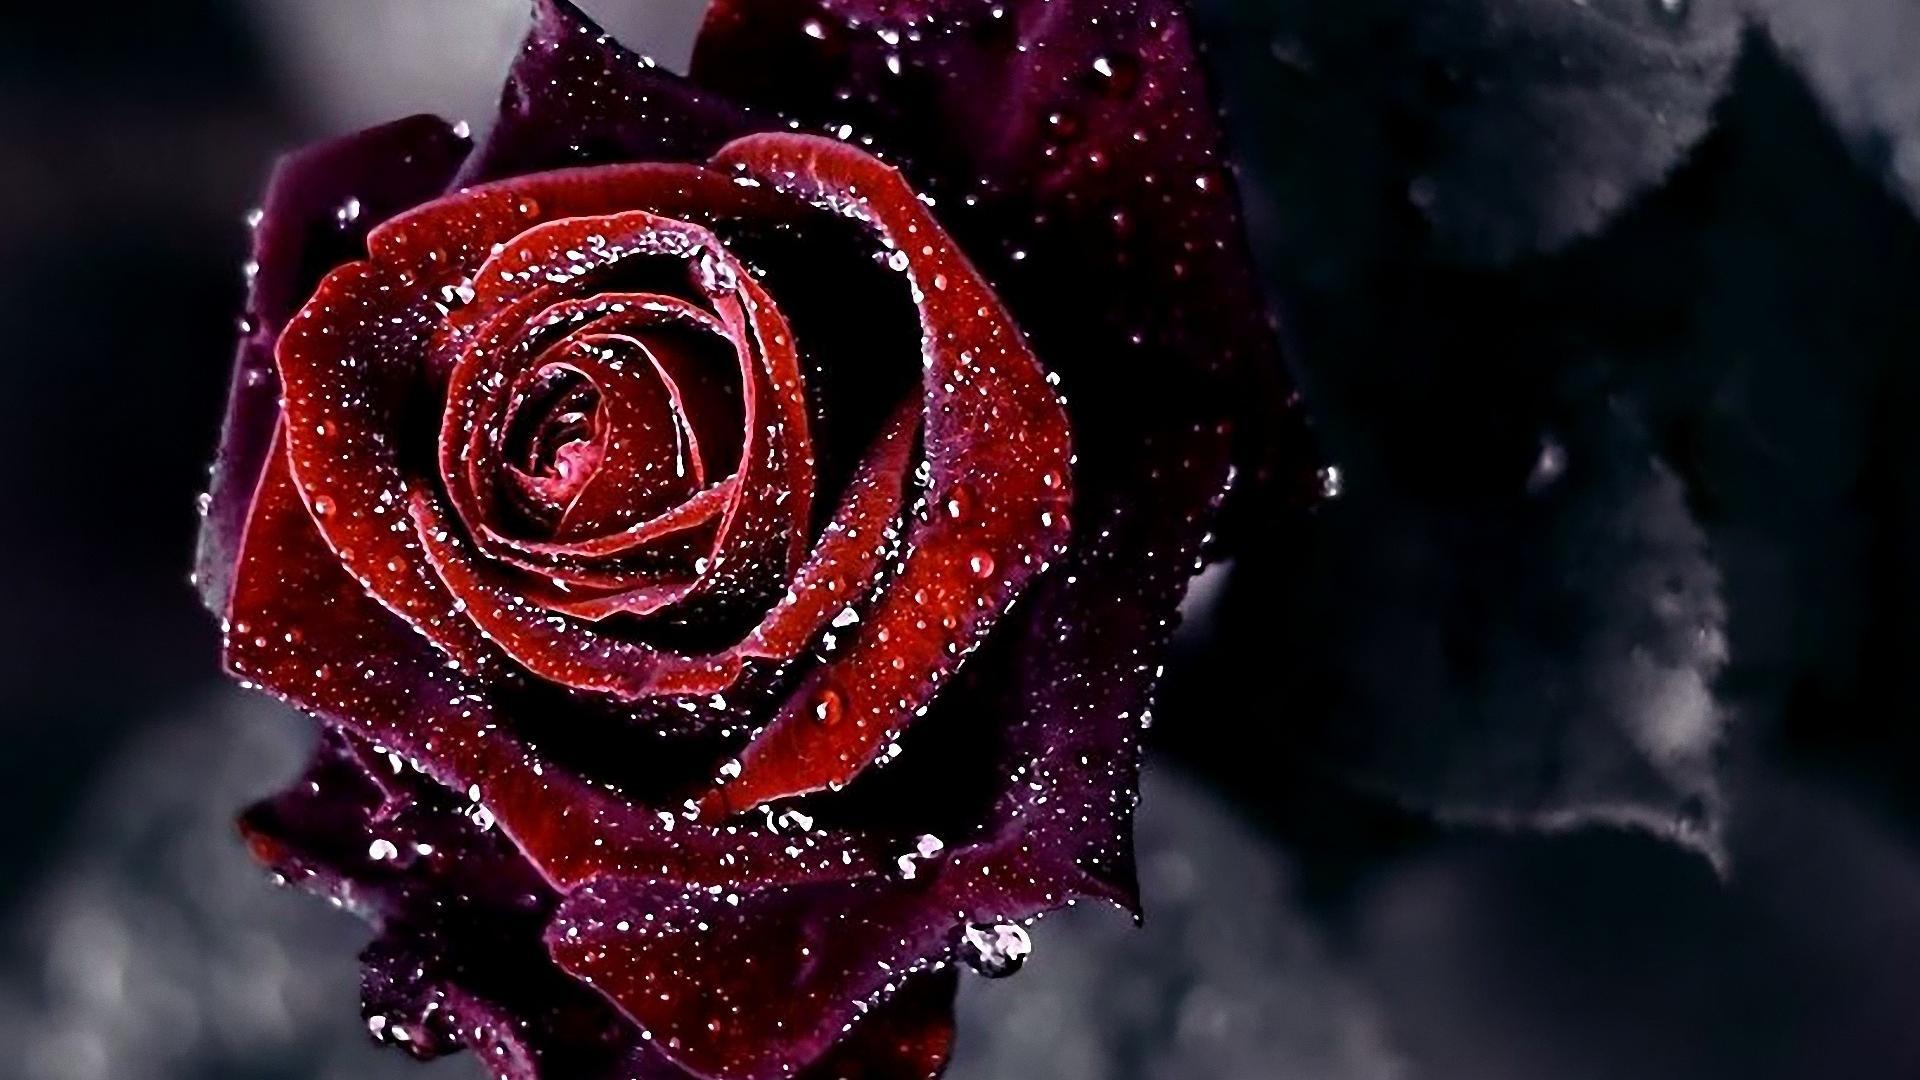 Red Rose Full HD Wallpaper Desktop Nice Top Latest Roses Of